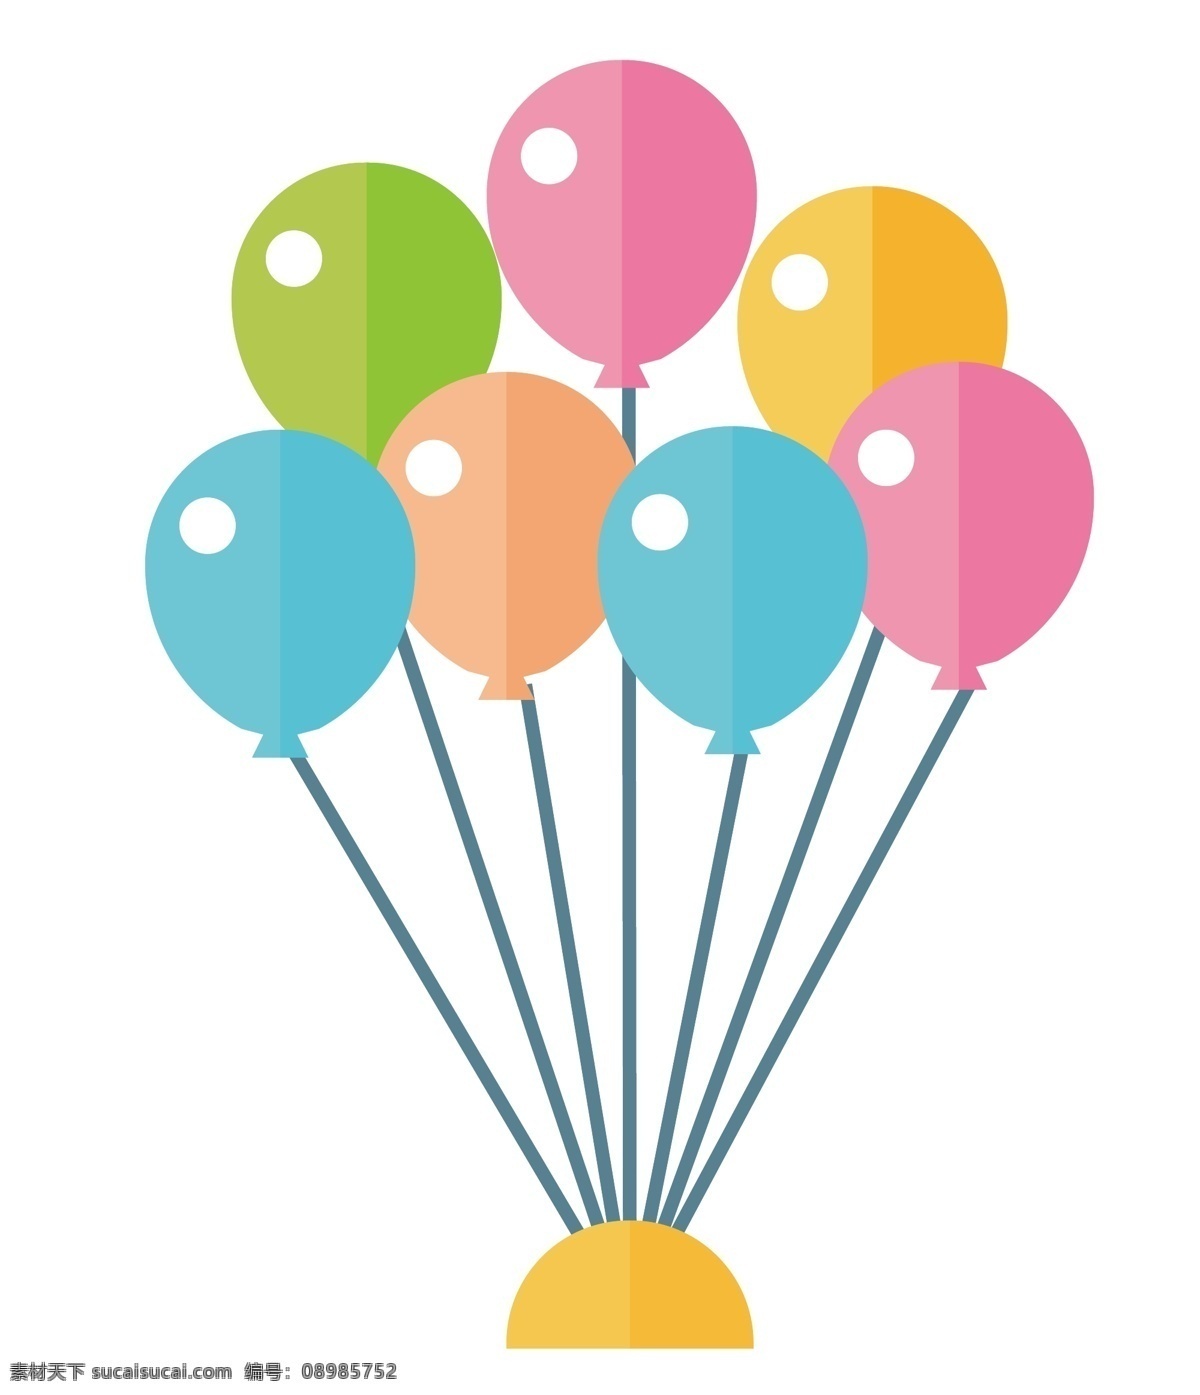 儿童节 彩色 气球 插画 彩色的气球 卡通插画 玩具插画 儿童节礼品 礼物插画 儿童玩具 飘荡的气球